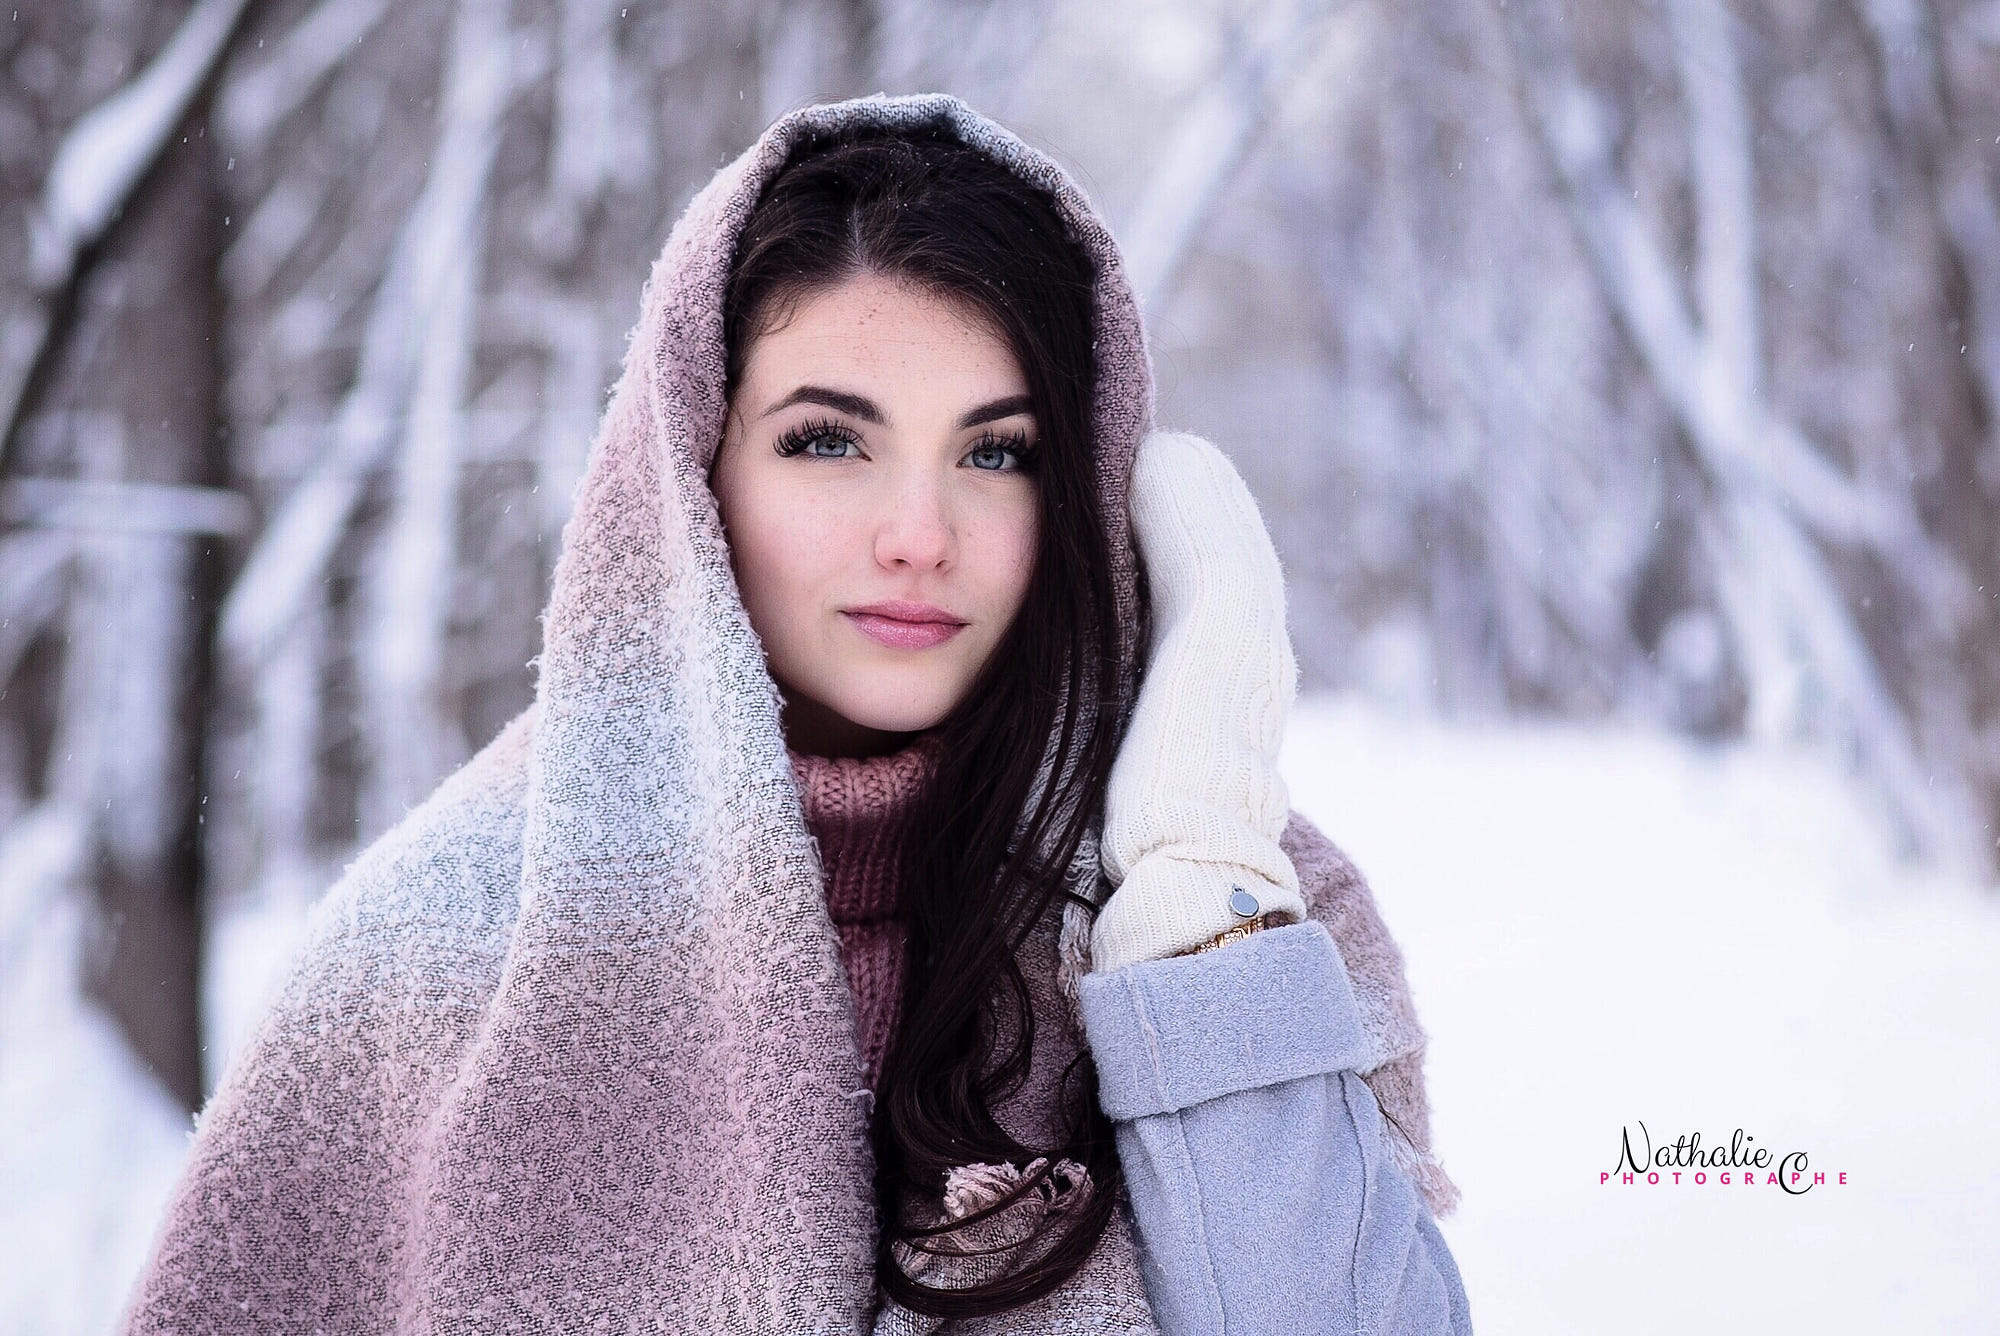 People 2000x1336 500px women model portrait winter depth of field sweater brunette blue eyes watermarked